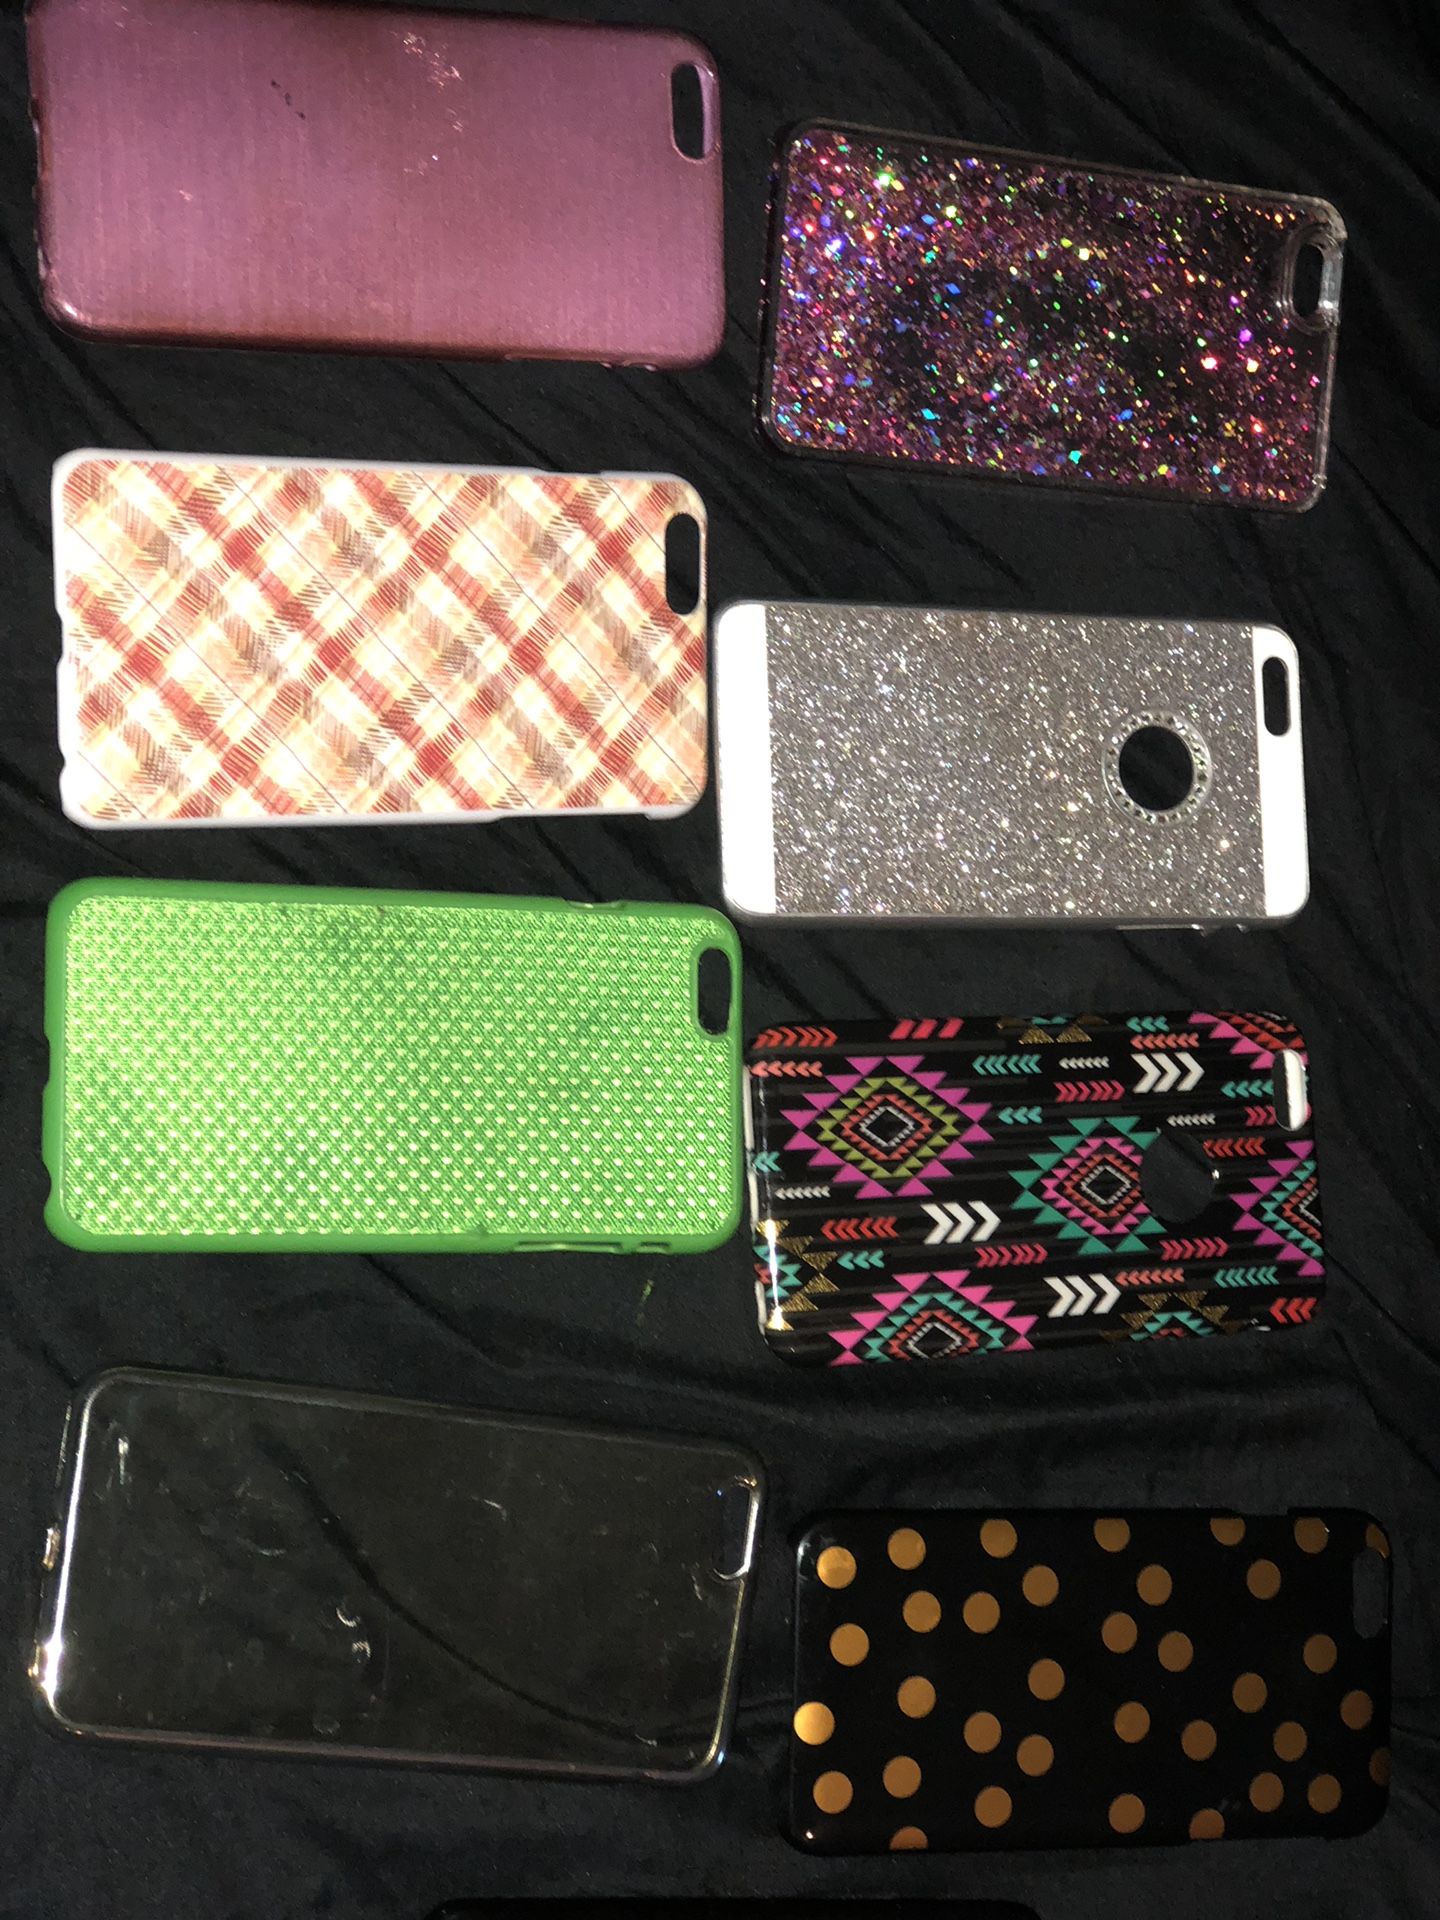 iPhone 6 Plus cases